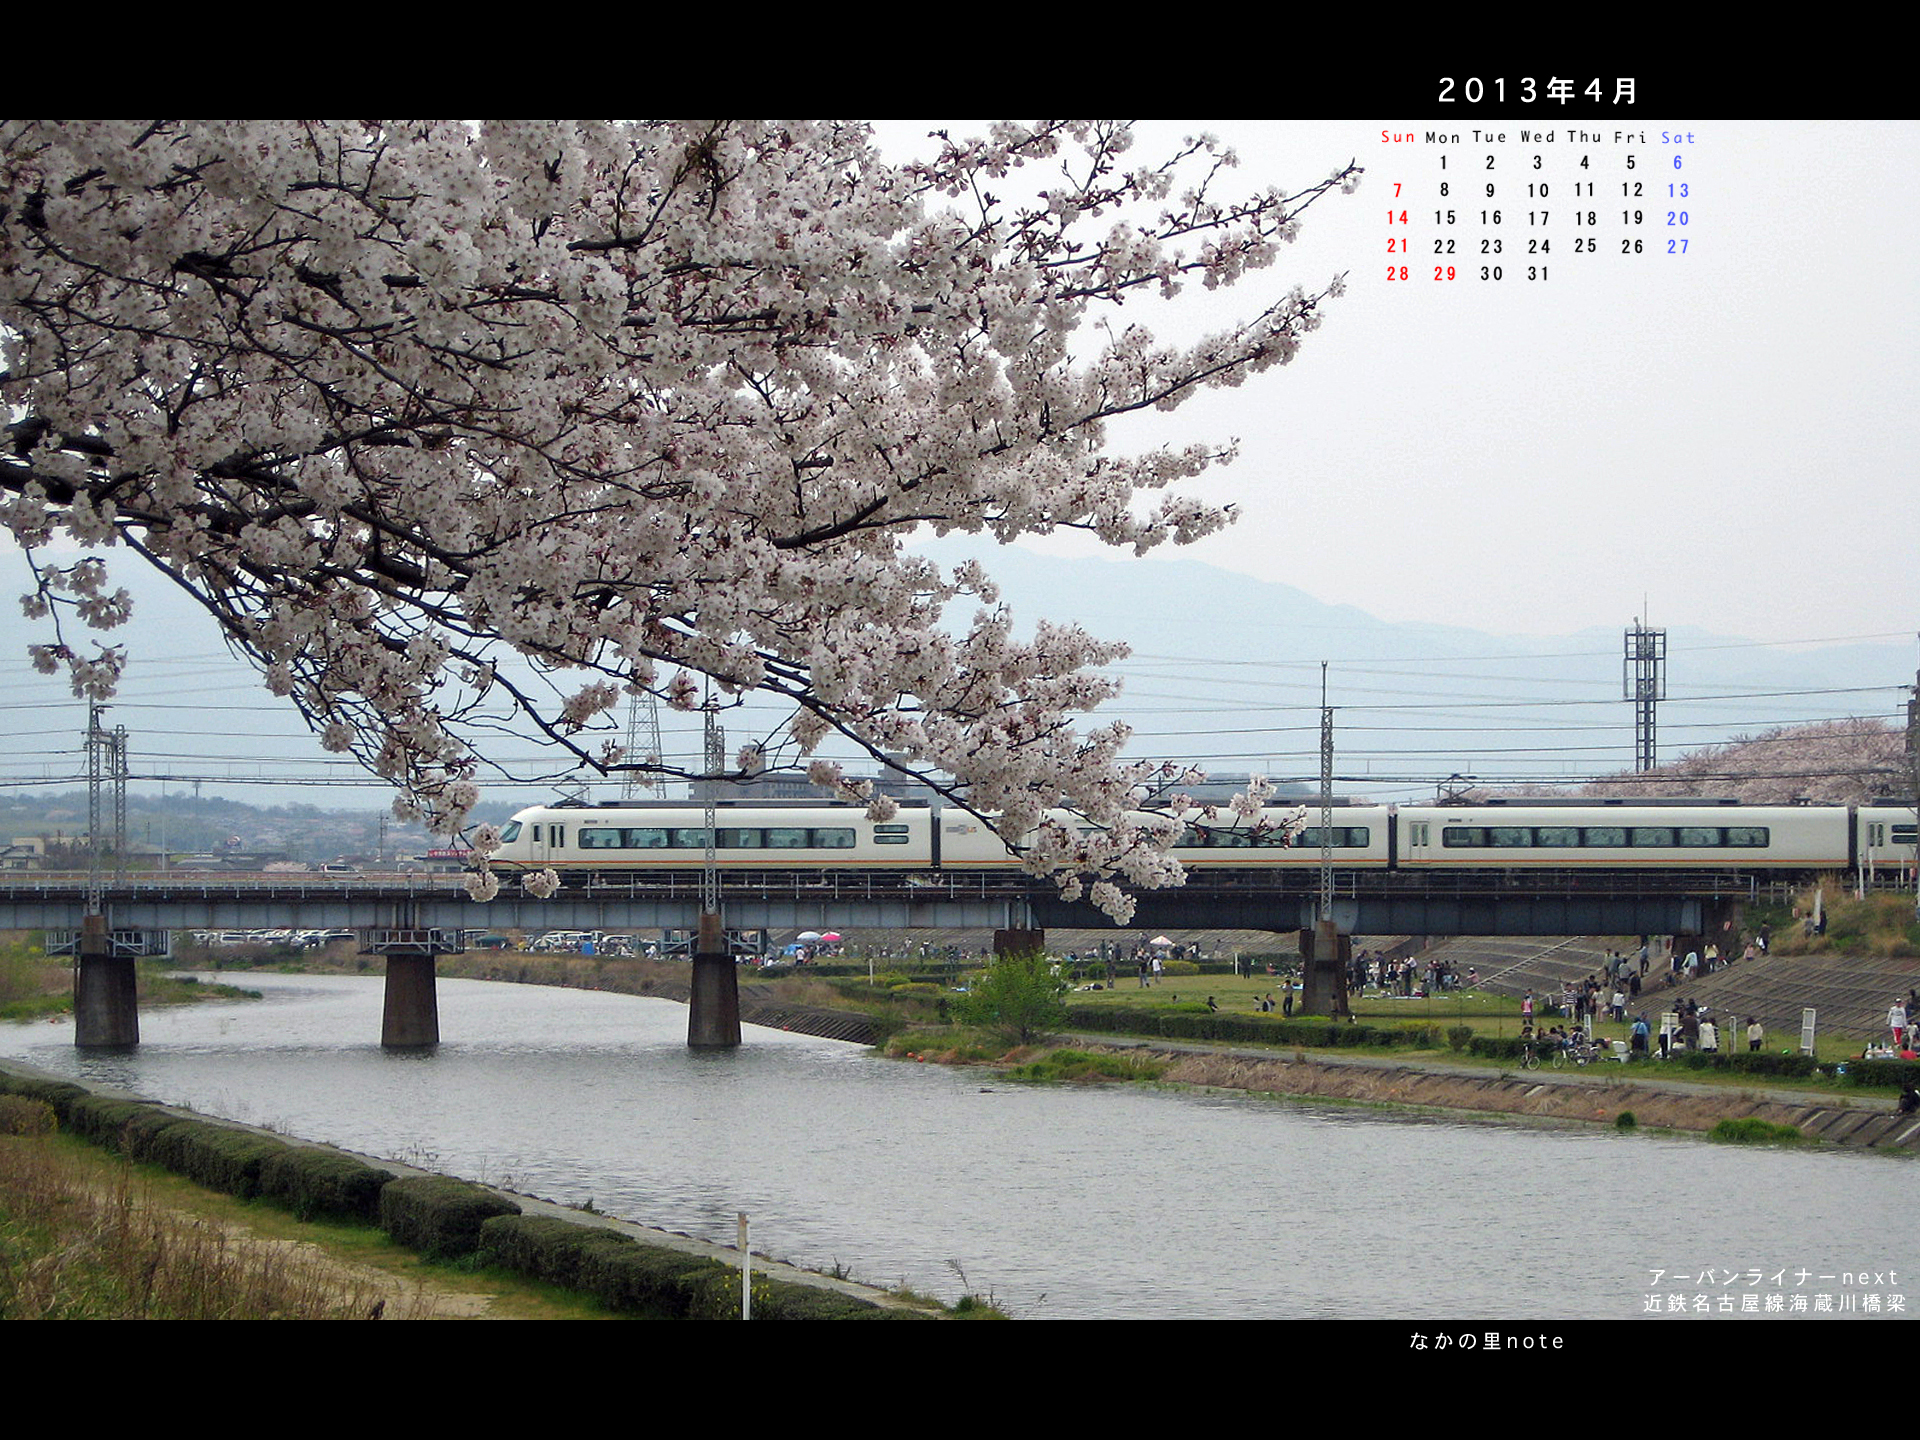 2013年3月4対3画面用壁紙海蔵川ul 北播磨ローカルネットワーク